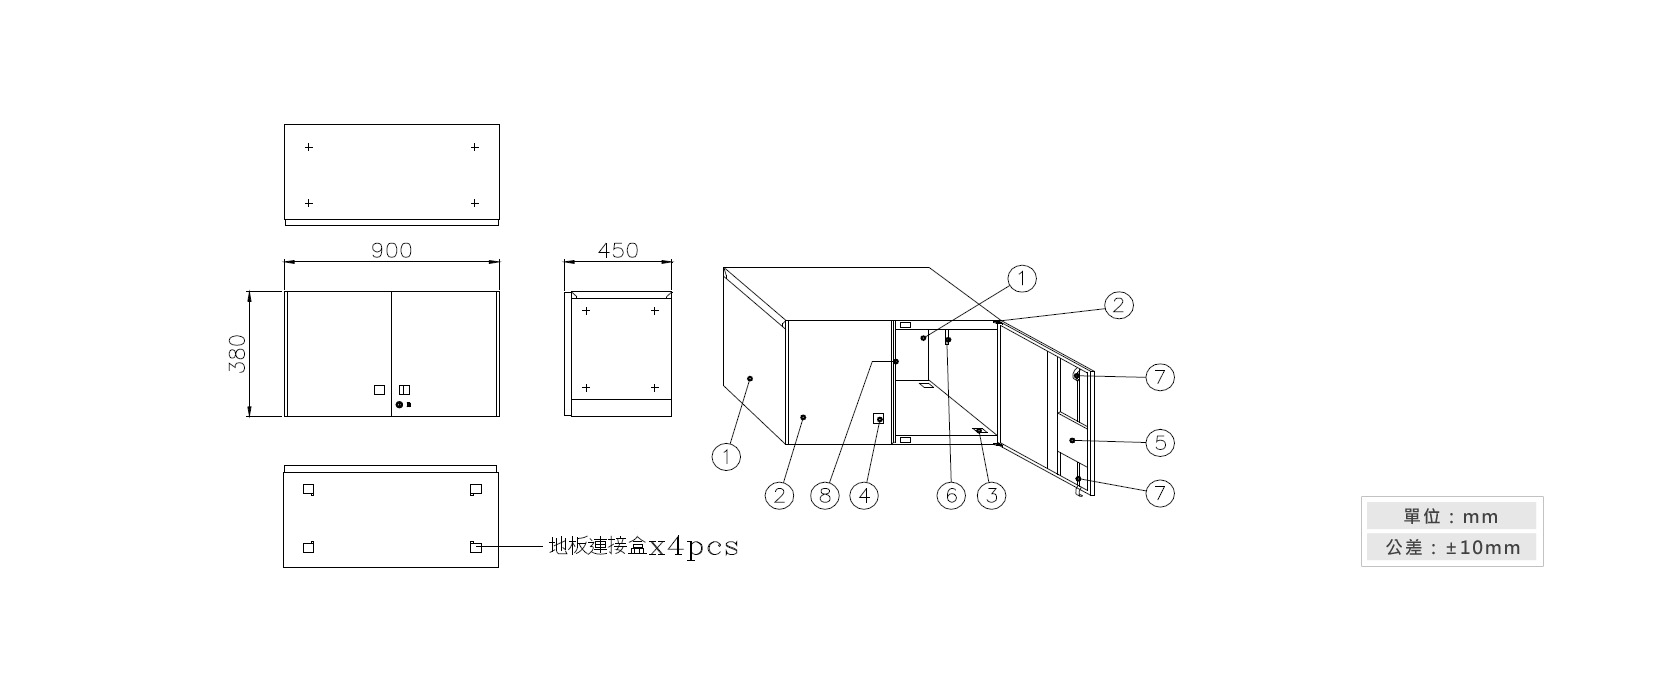 3-6 雙開門上置式鋼製公文櫃材質說明